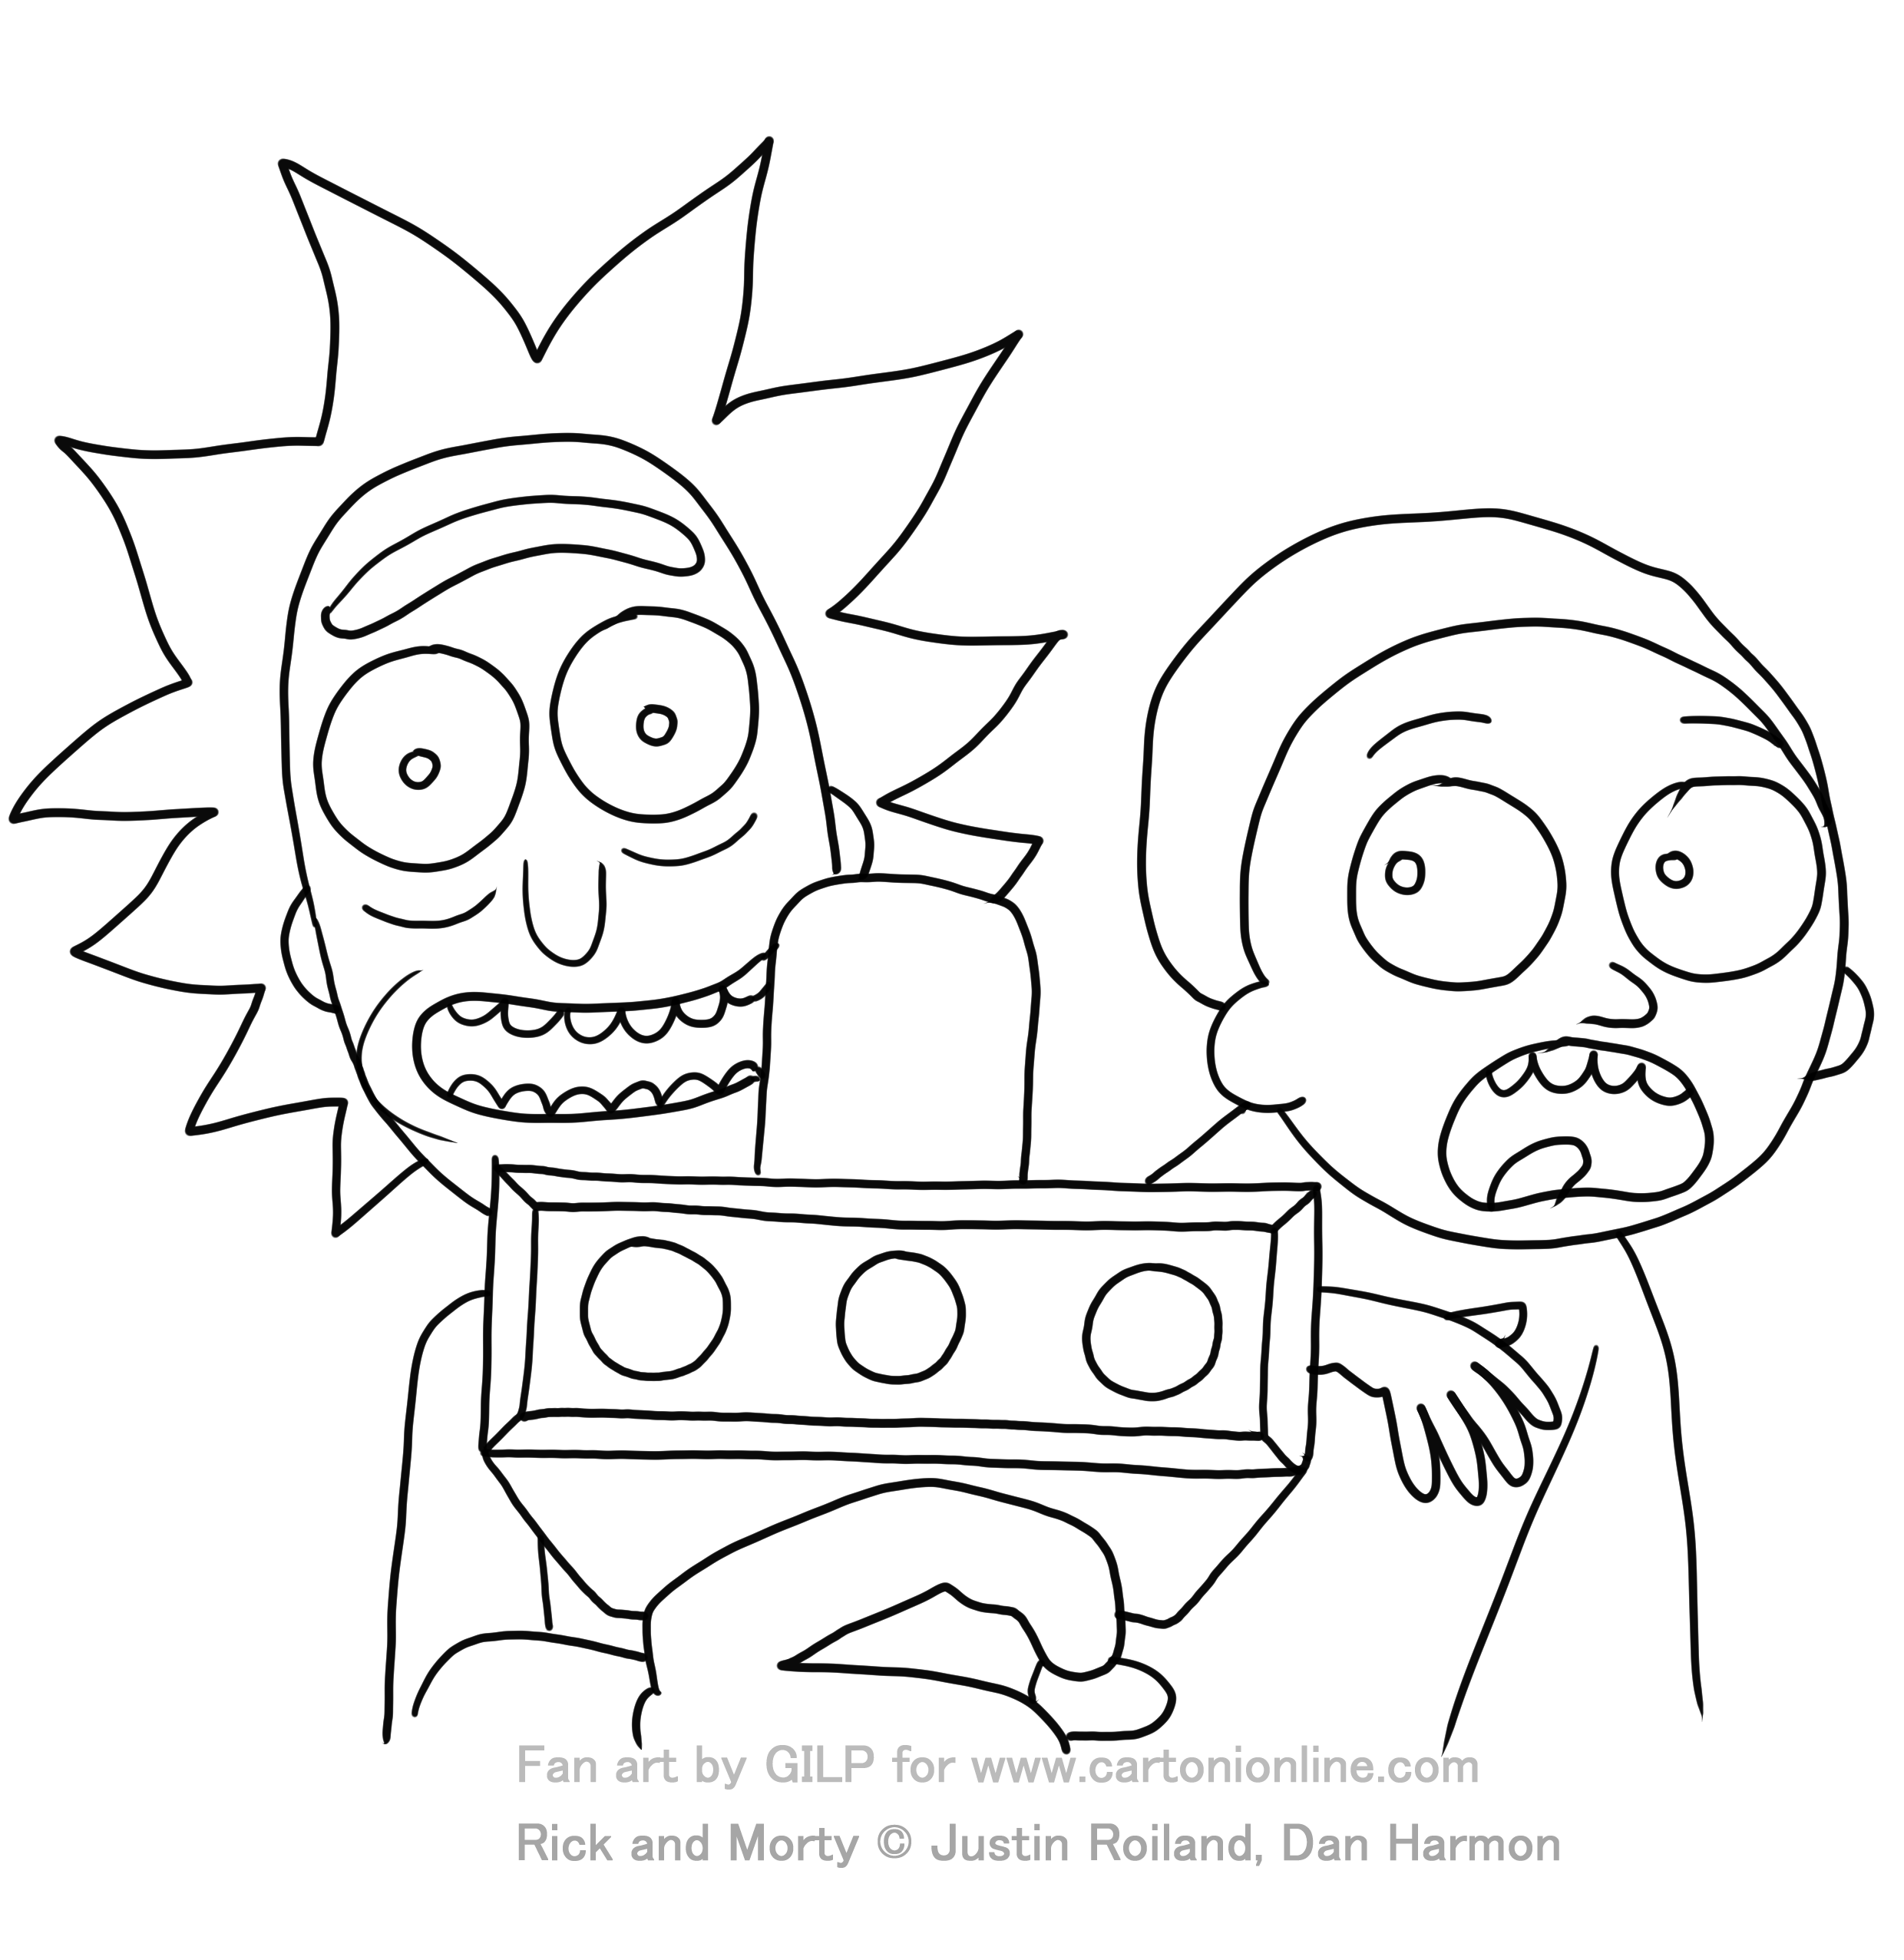 Dibujo de Rick y Morty 04 de Rick y Morty para colorear